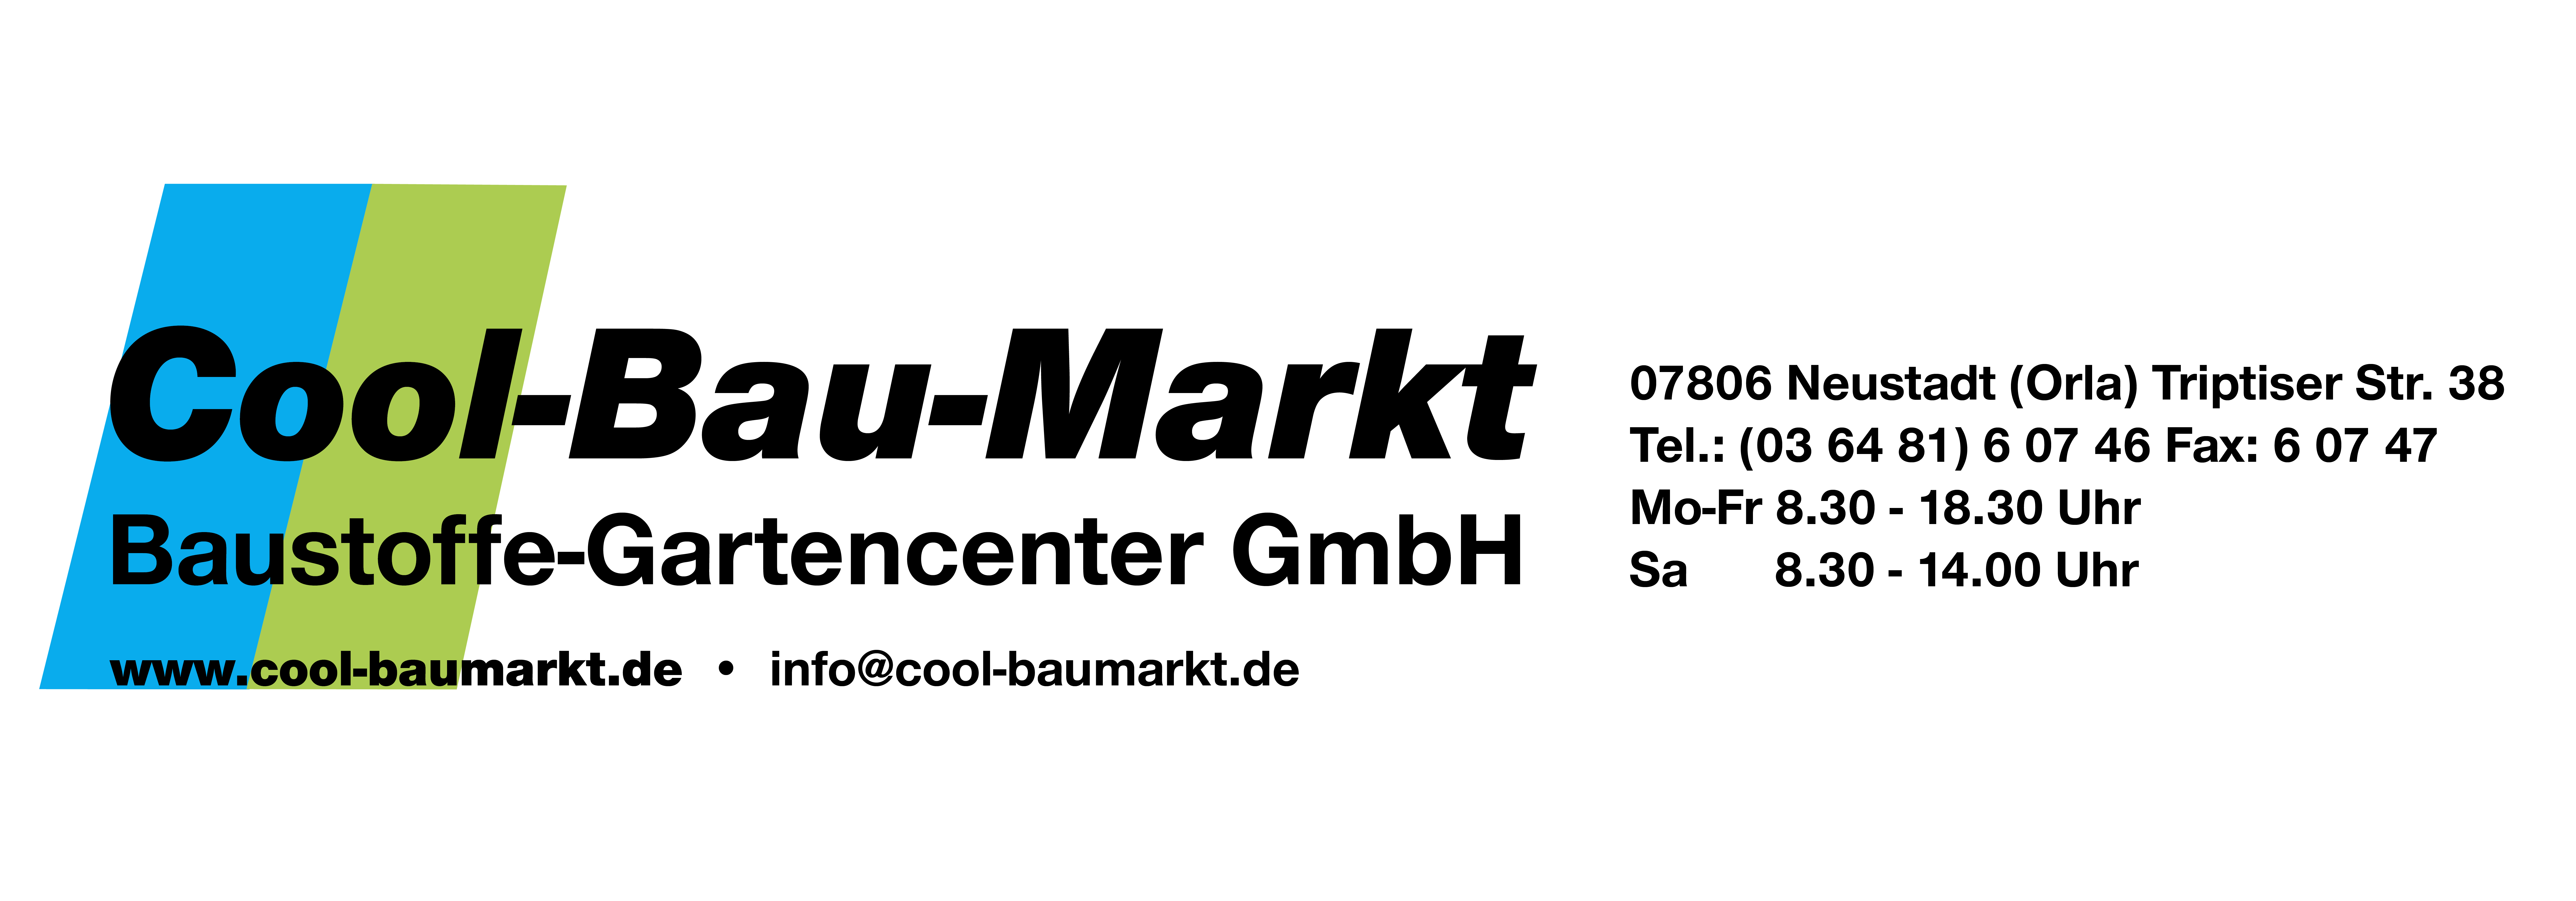 Cool-Baumarkt-Logoeindruck